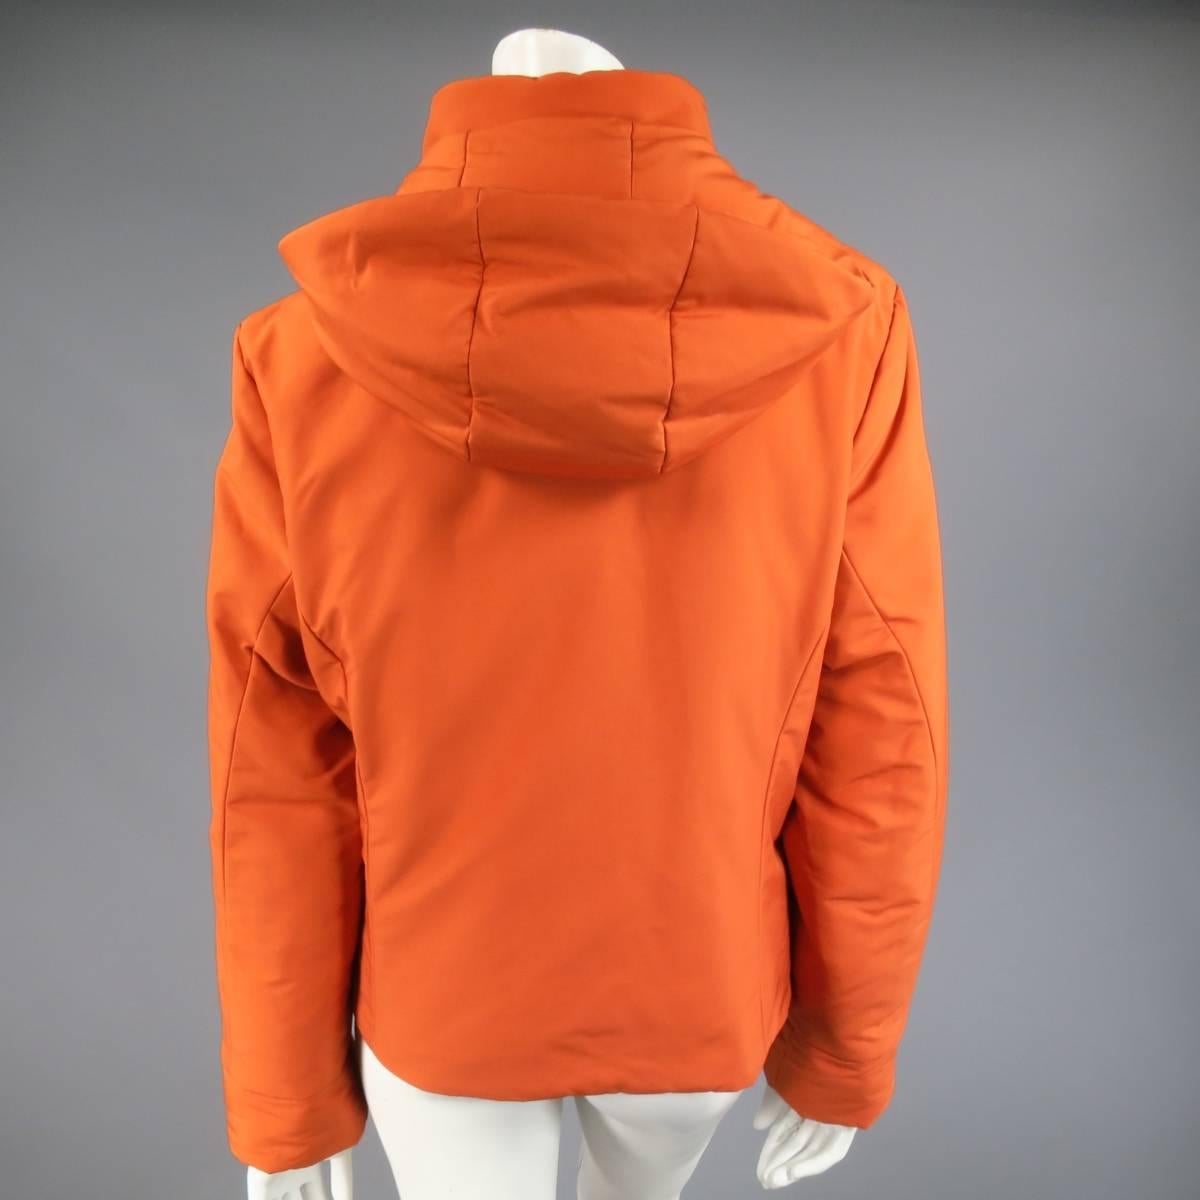 Women's LORO PIANA Jacket - Size 12 Orange Nylon Padded Storm System Hood Ski Coat